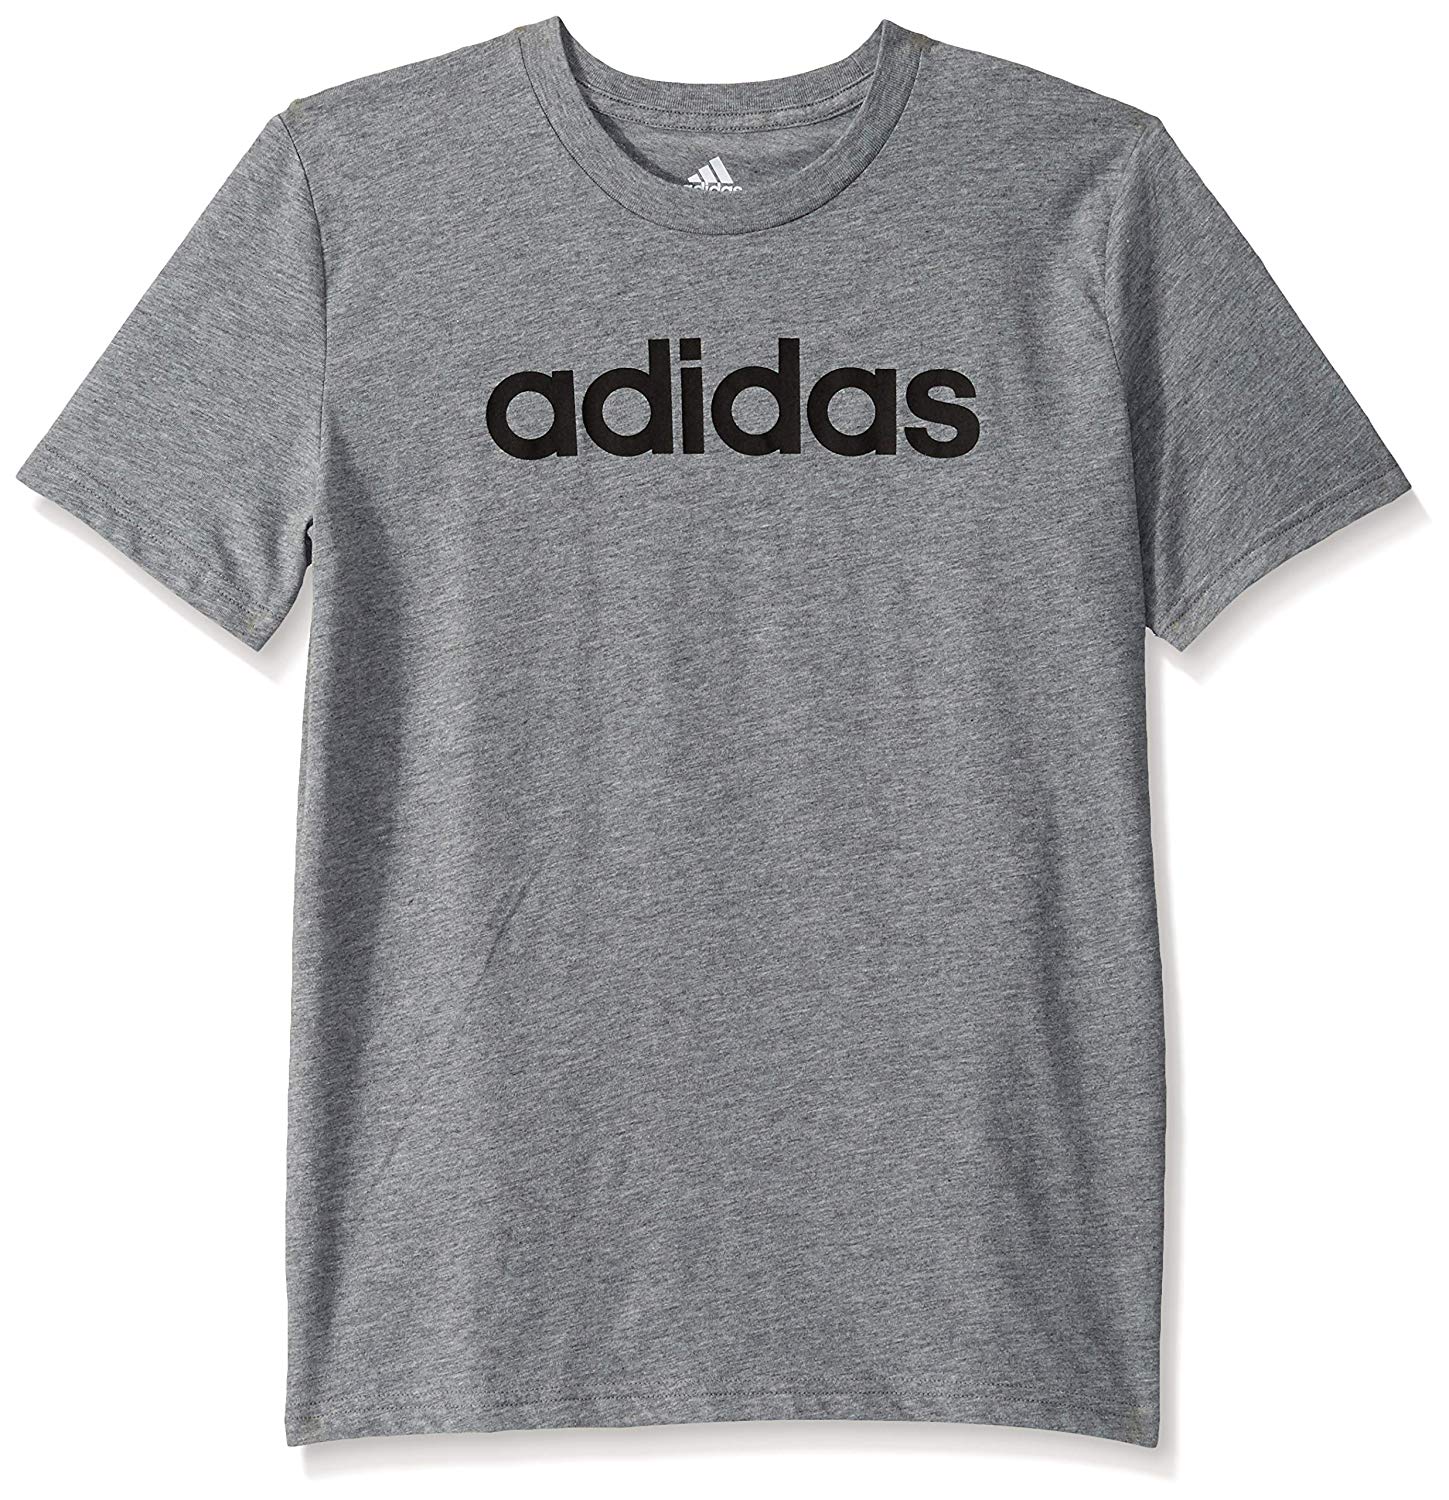 Adidas Big Kid Boys Short Sleeve Logo Tee